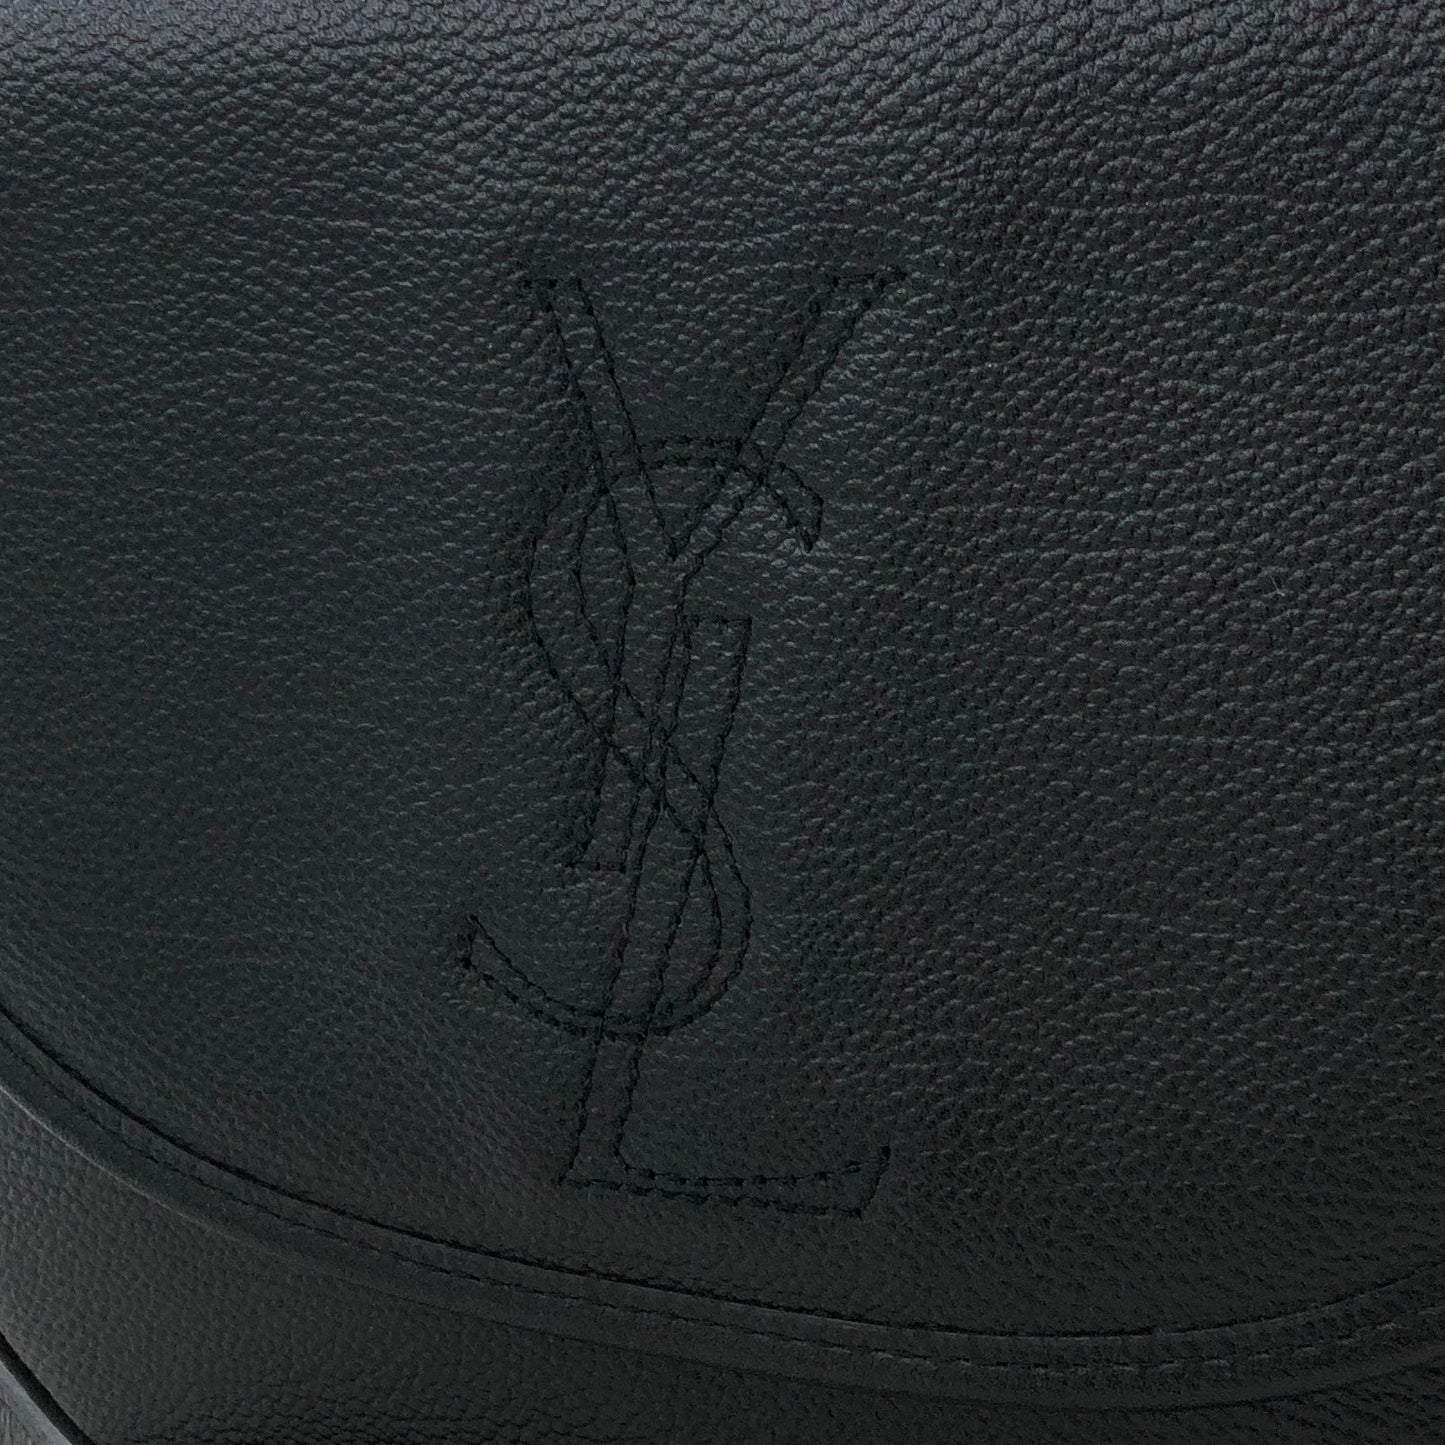 Yves Saint Laurent YSL logo Round Shoulder bag Black Vintage Old jvb8j4